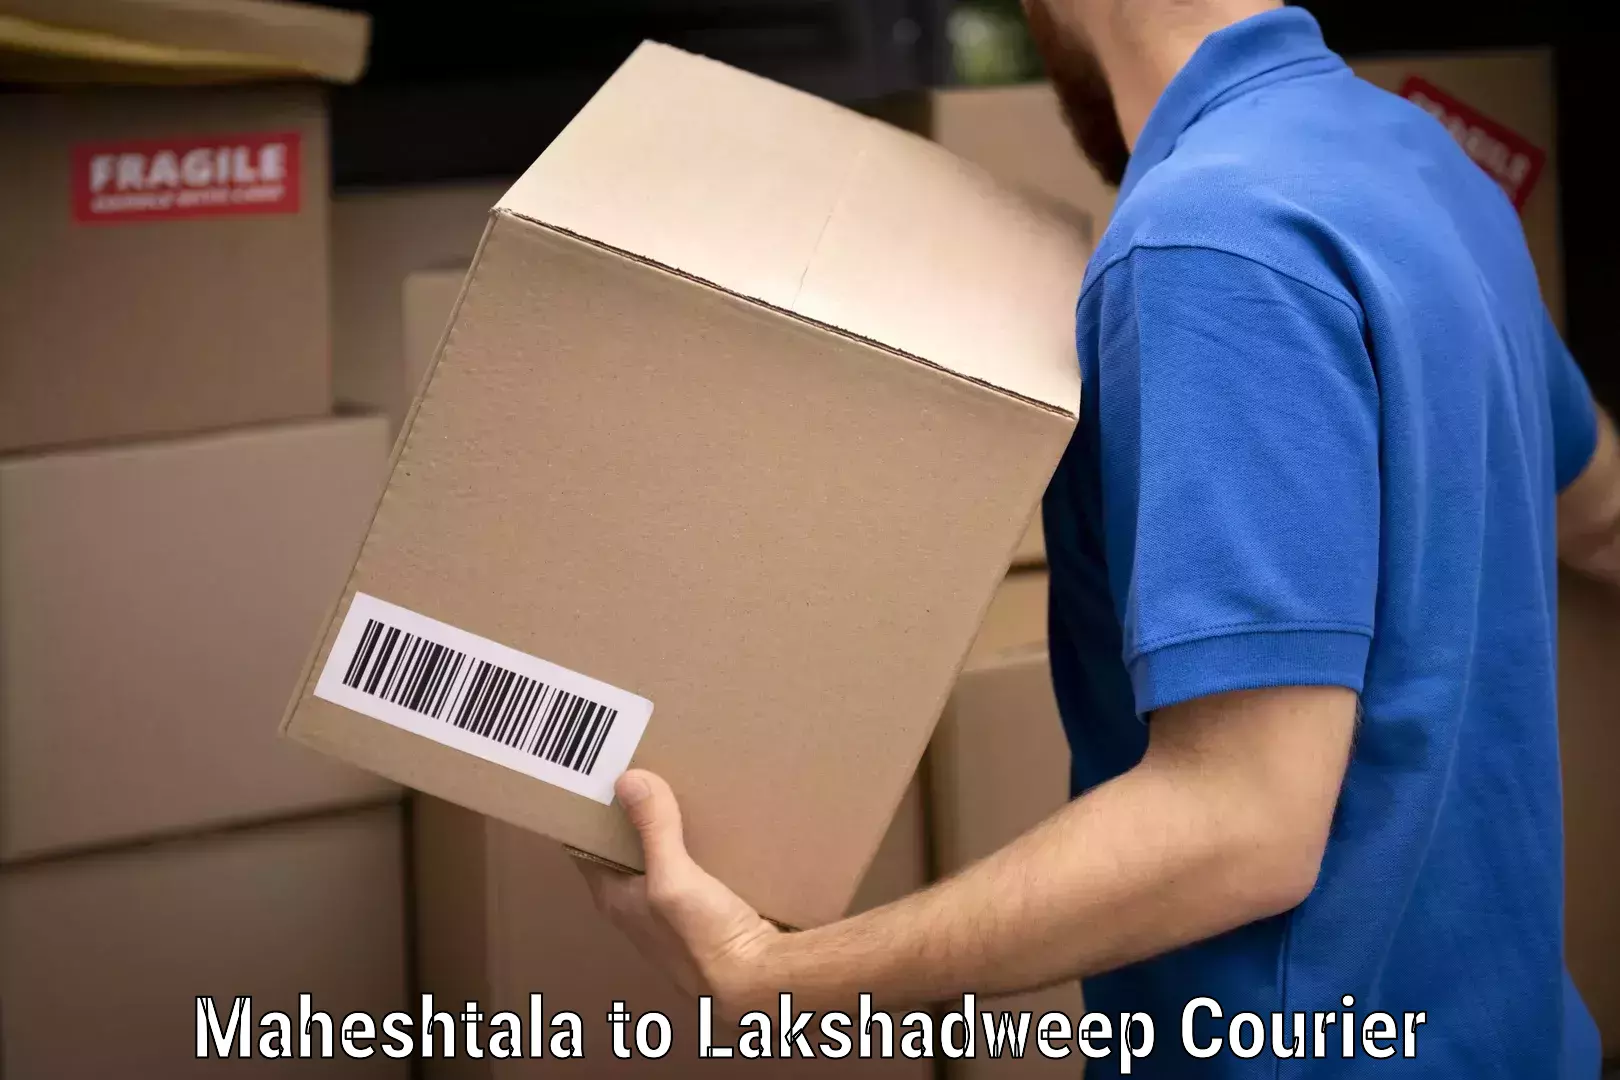 Professional furniture moving in Maheshtala to Lakshadweep